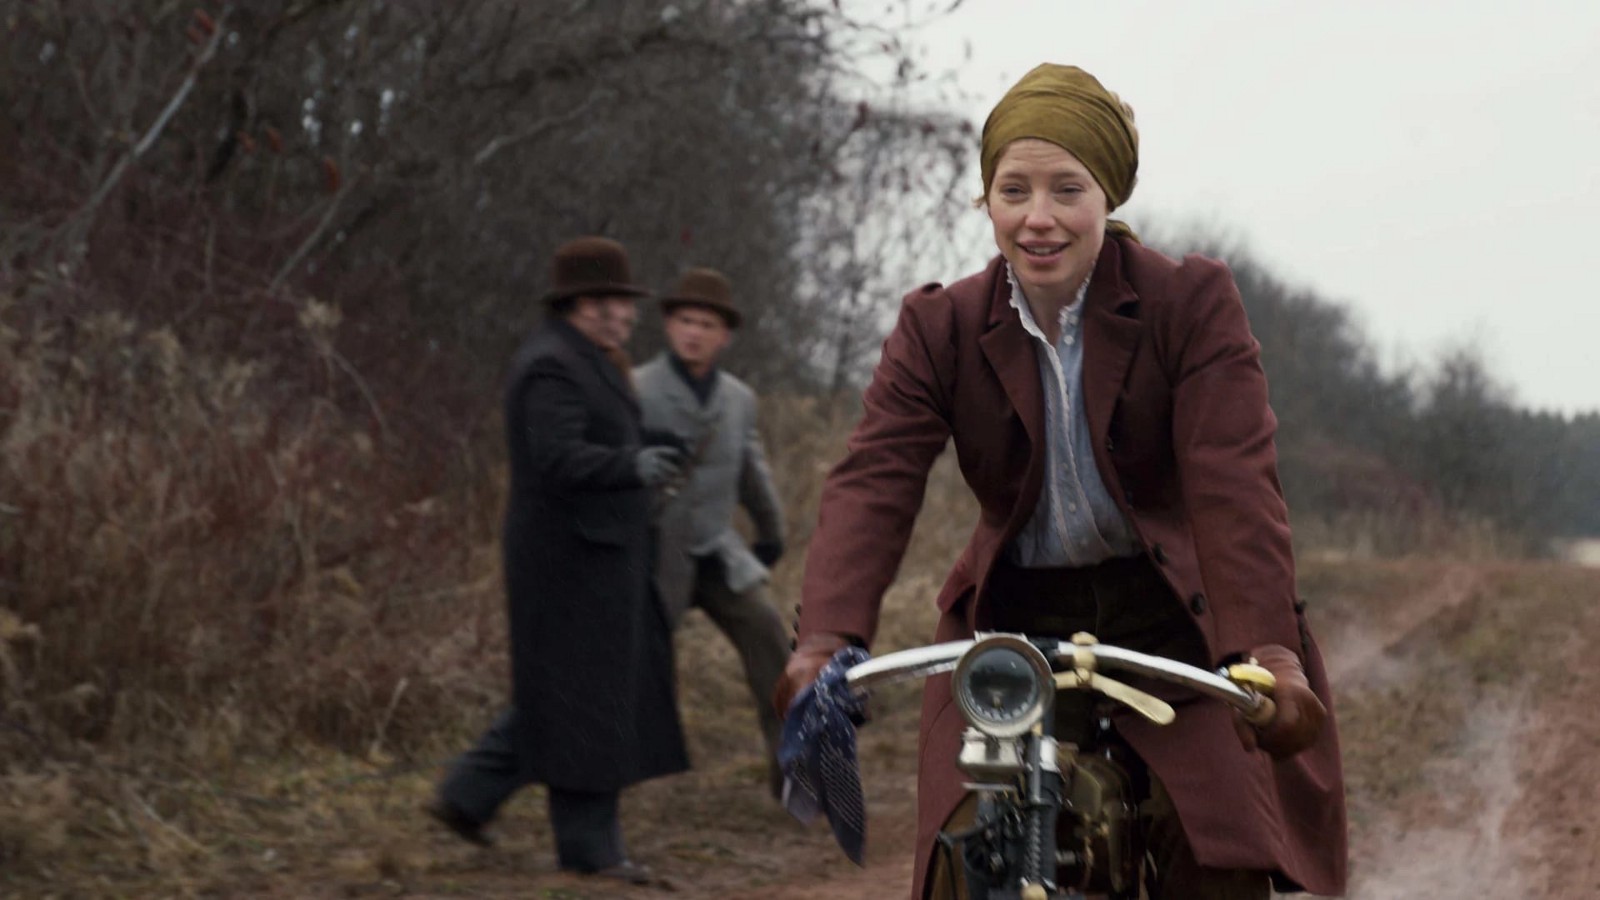 A personagem Miss Stacy, professora de Anne, pilota uma moto na estrada e dois homens olham para ela.